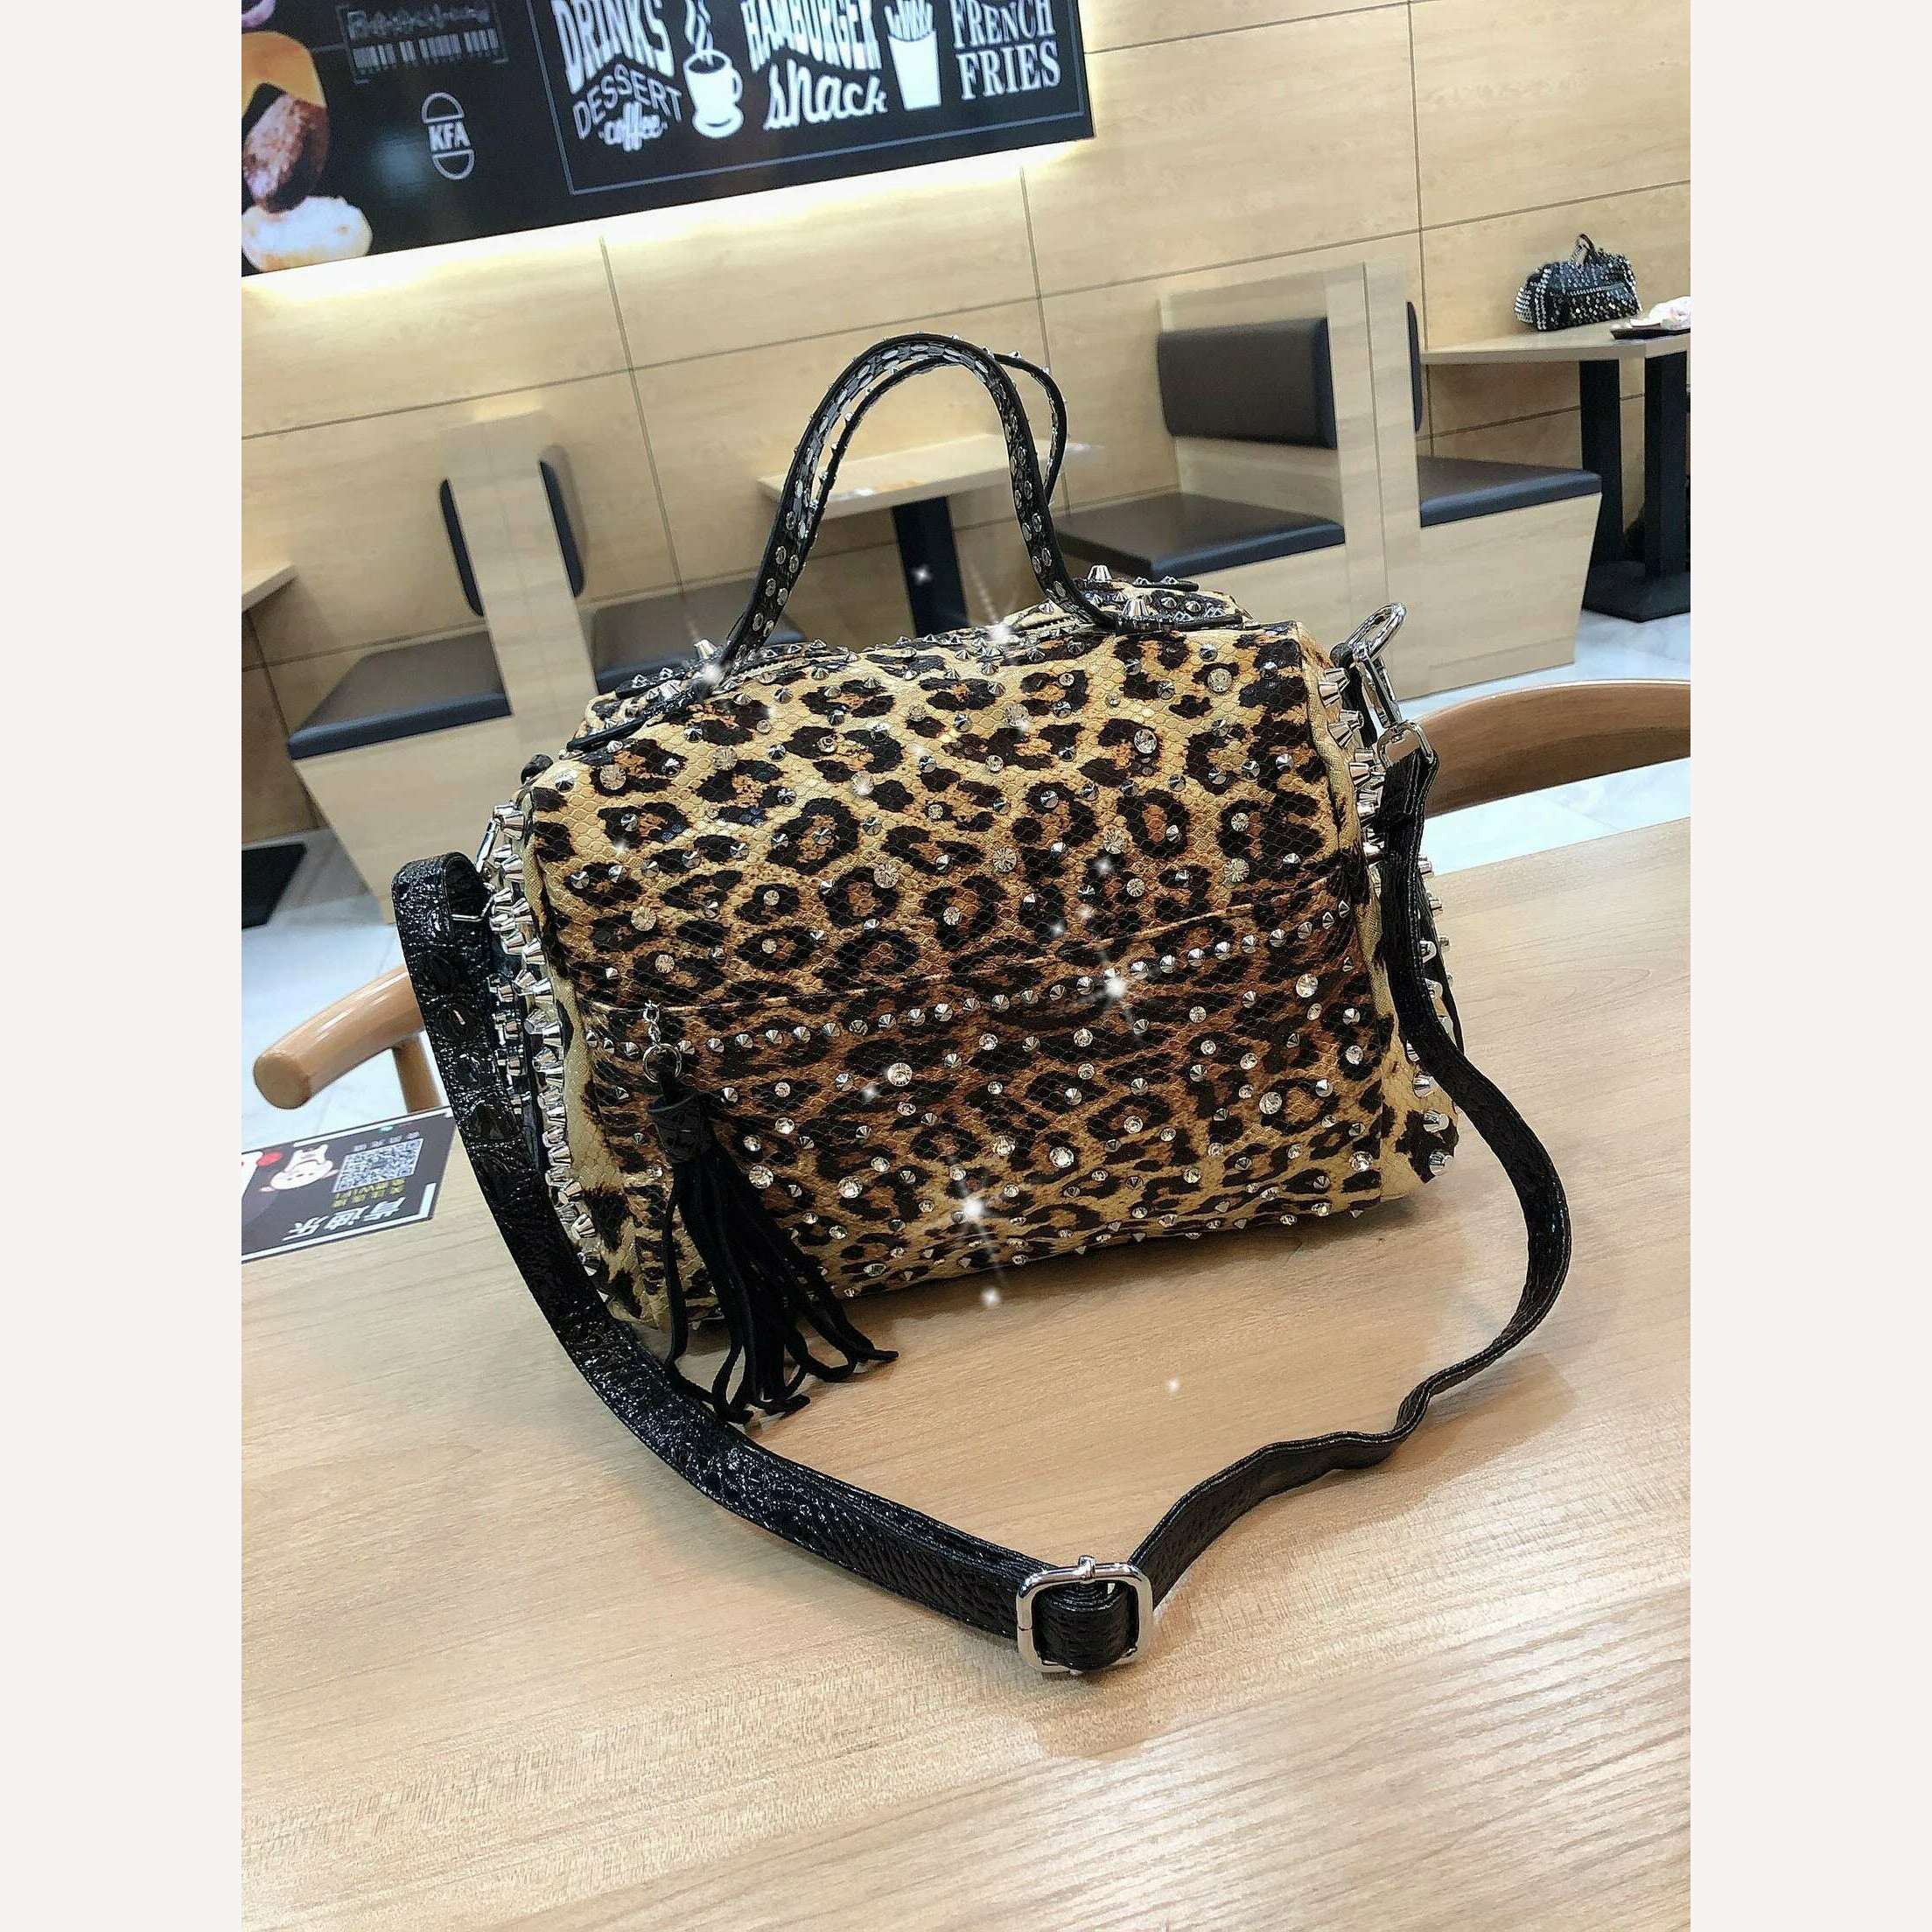 KIMLUD, New trend handbags personality fashion retro leopard rhinestone handbag rivet shoulder bag ladies casual handbag Messenger bag, KIMLUD Womens Clothes